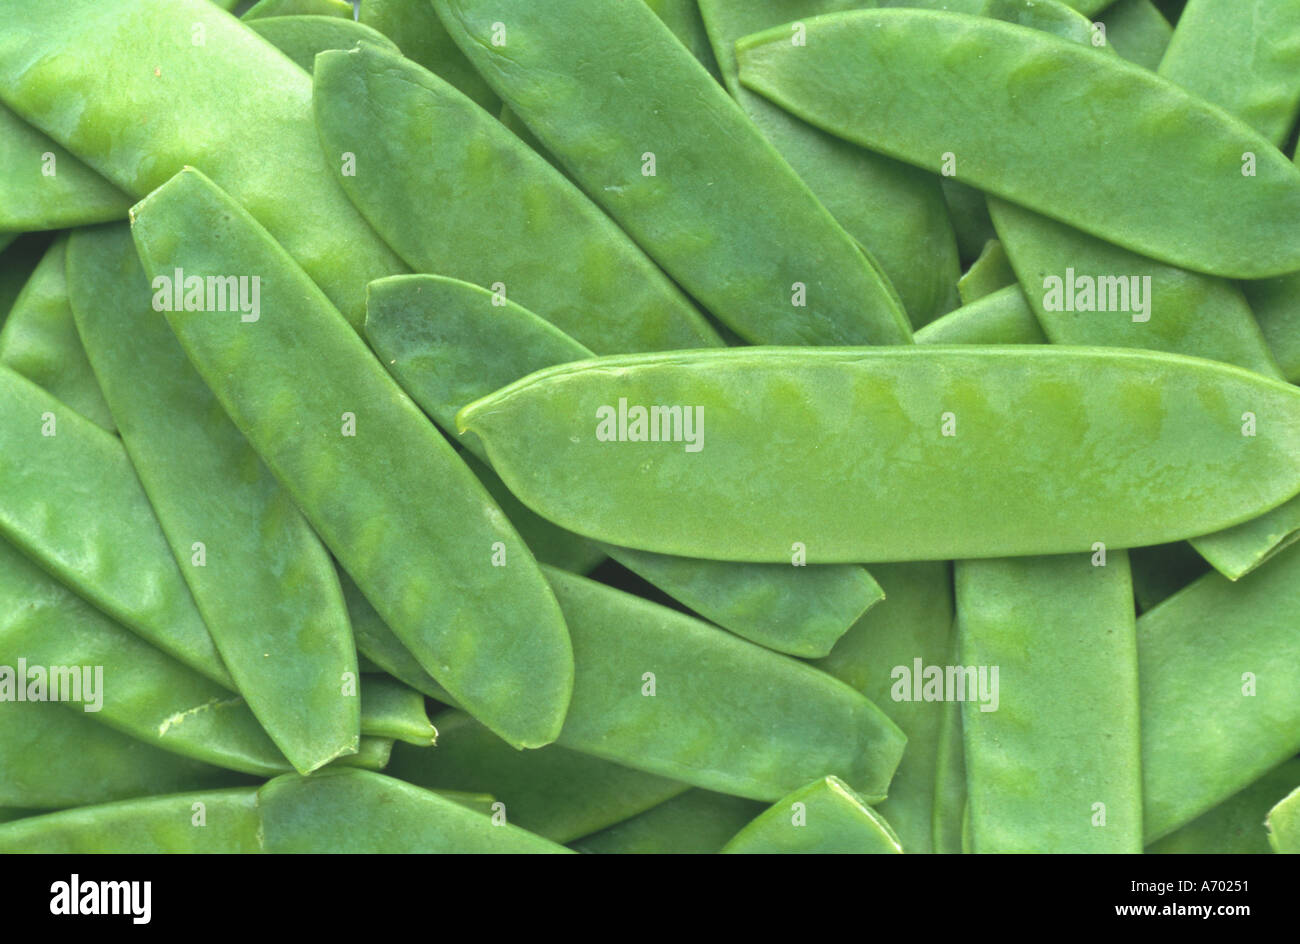 food vegetable peas sugarpeas sugar pisum saccharatum Stock Photo